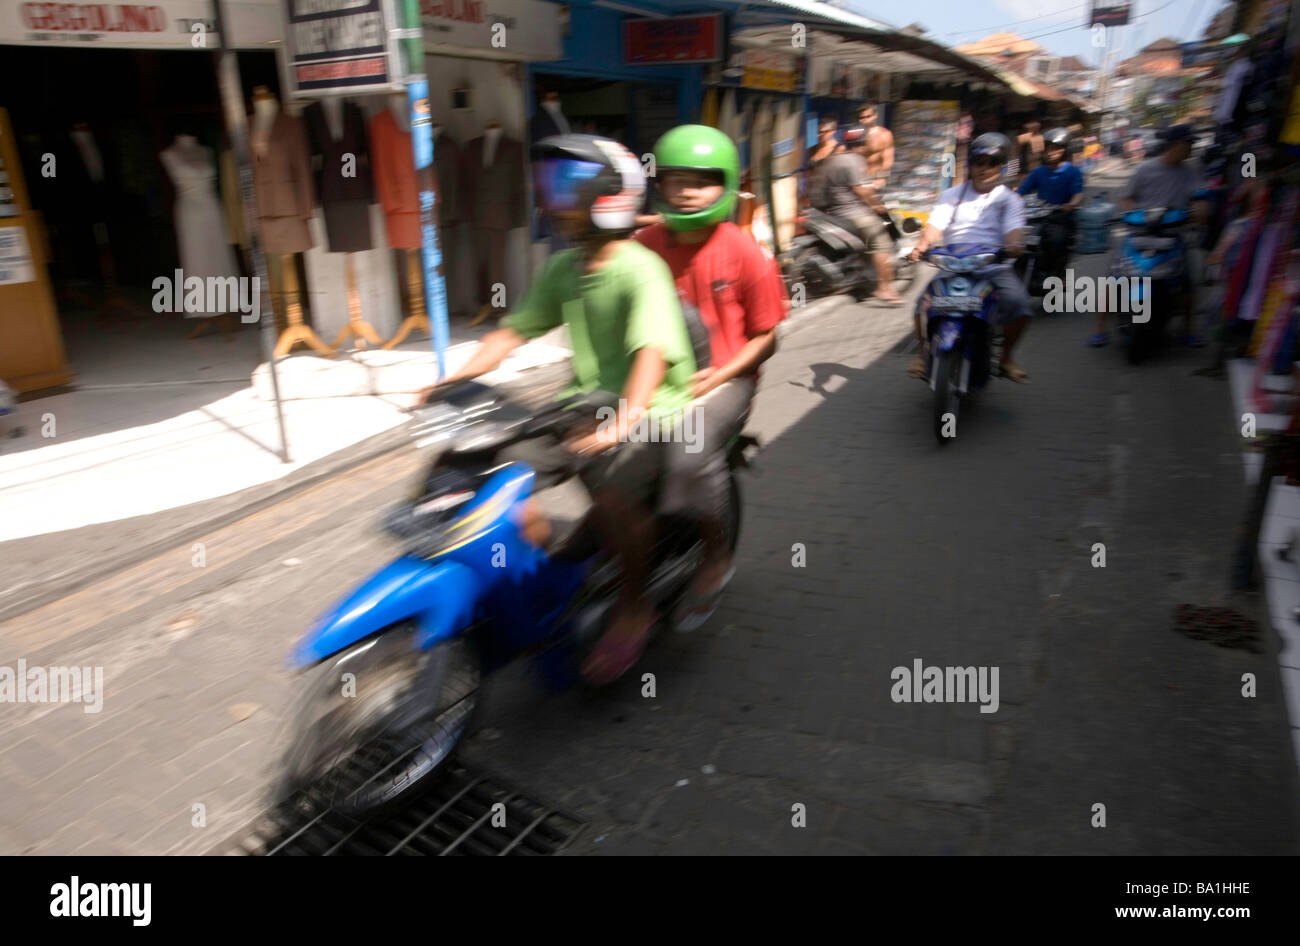 Indonesia, Bali. Kuta. Poppies Lane. Motorbikes. Stock Photo